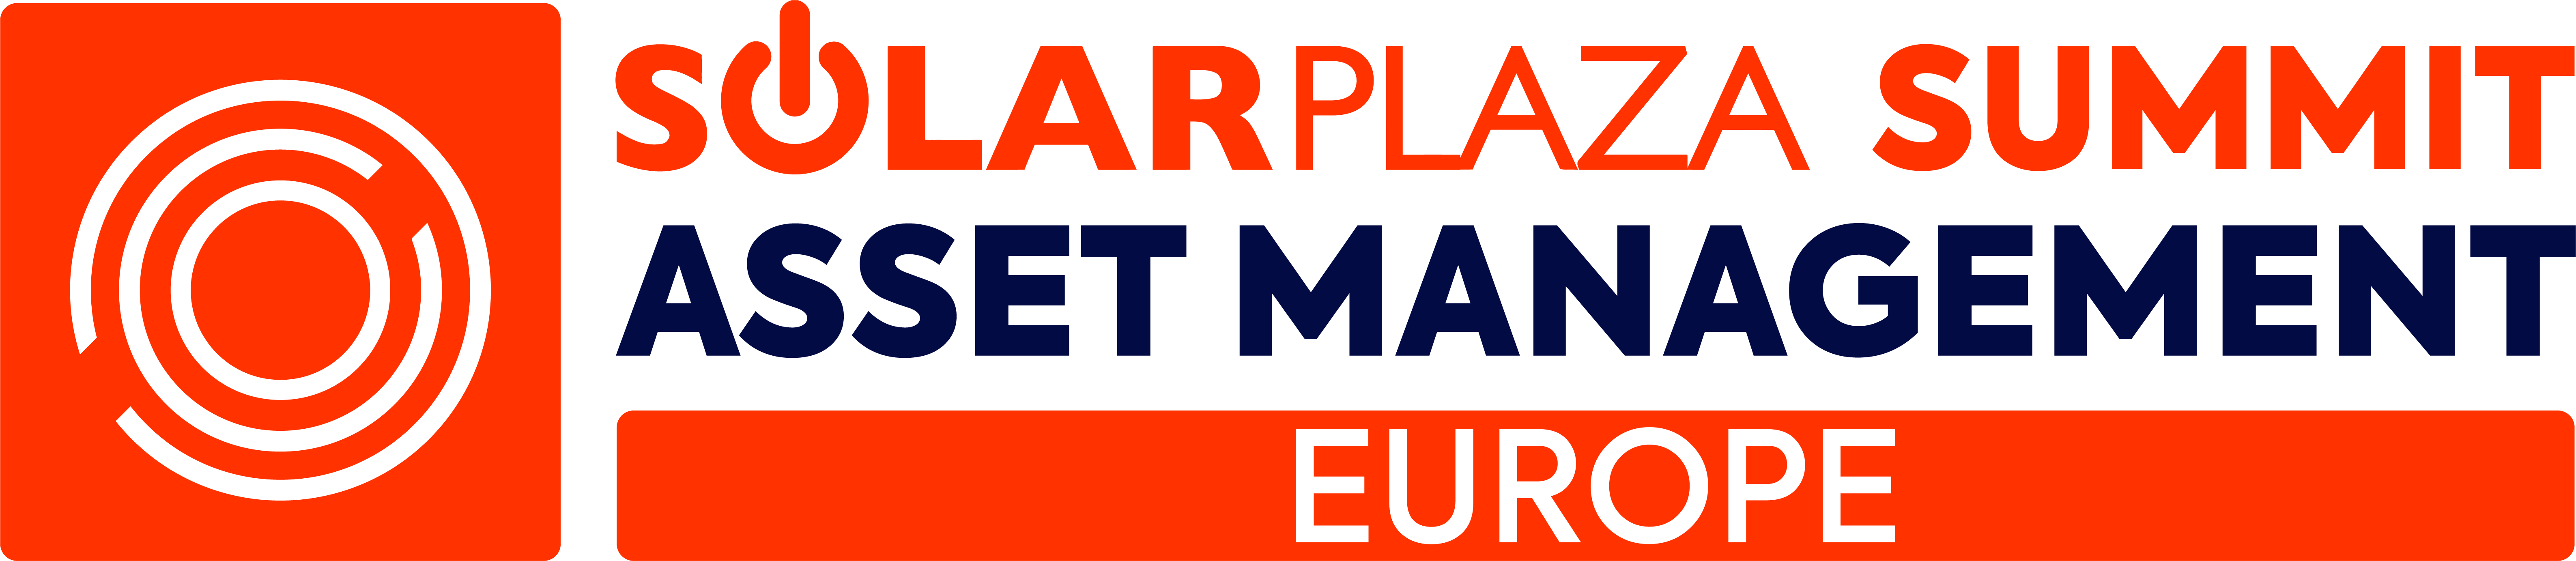 Solarplaza Asset Management Europe  organized by Solarplaza